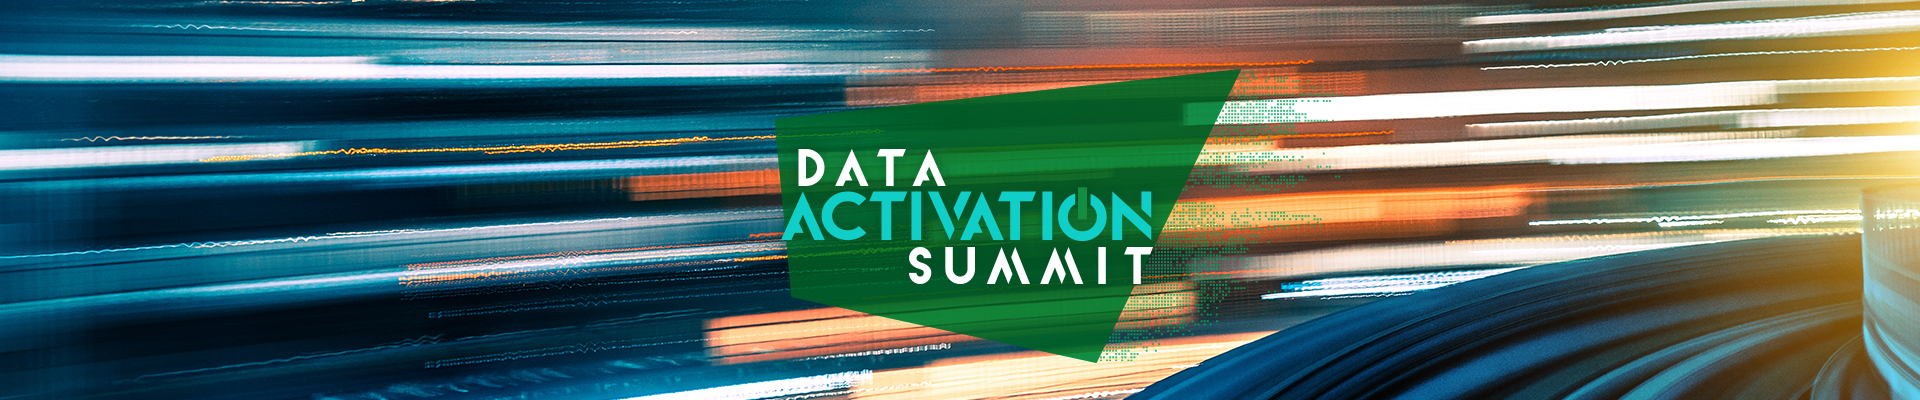 Data Activation Summit 